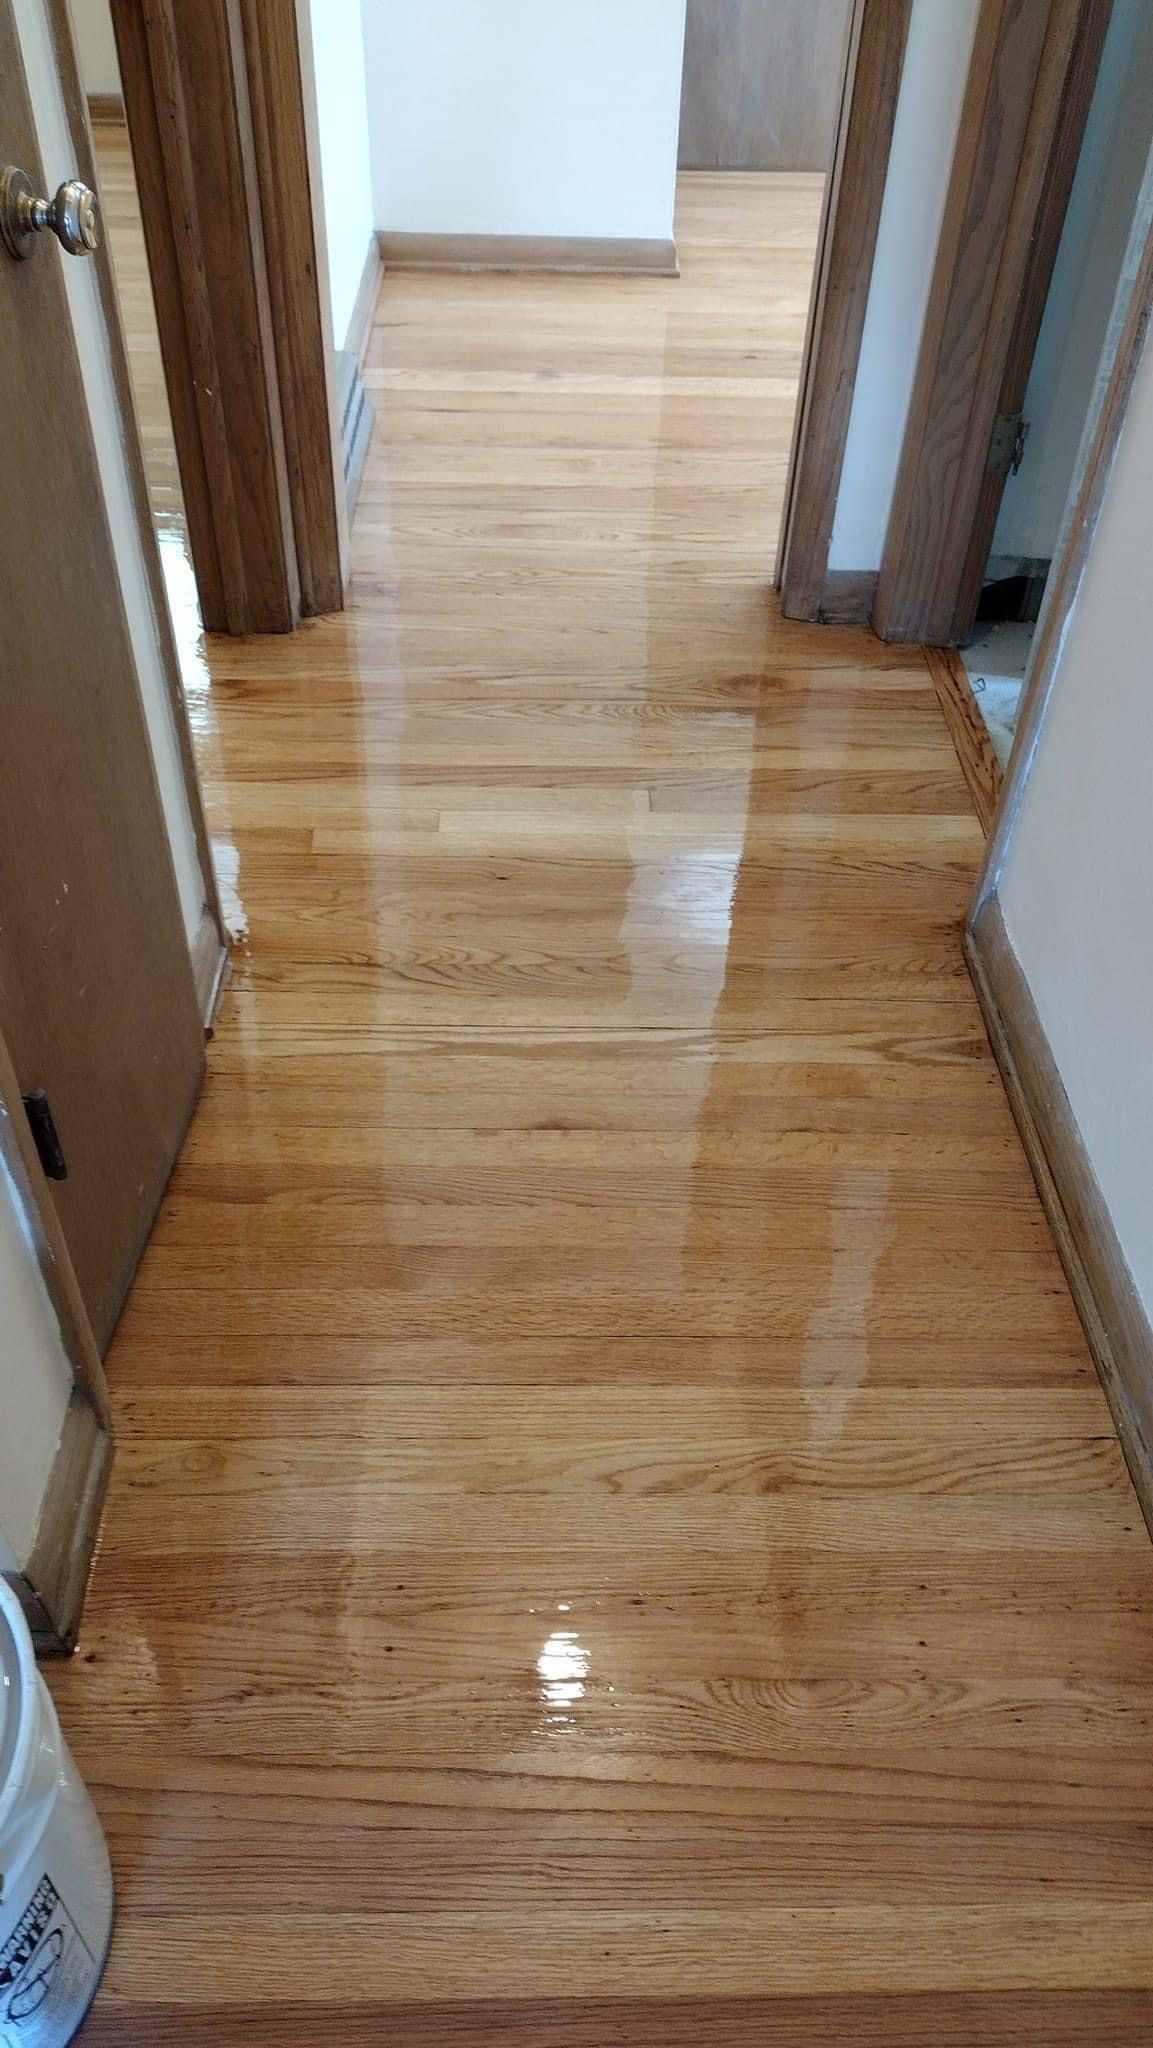 completed floor refinishing & polishing